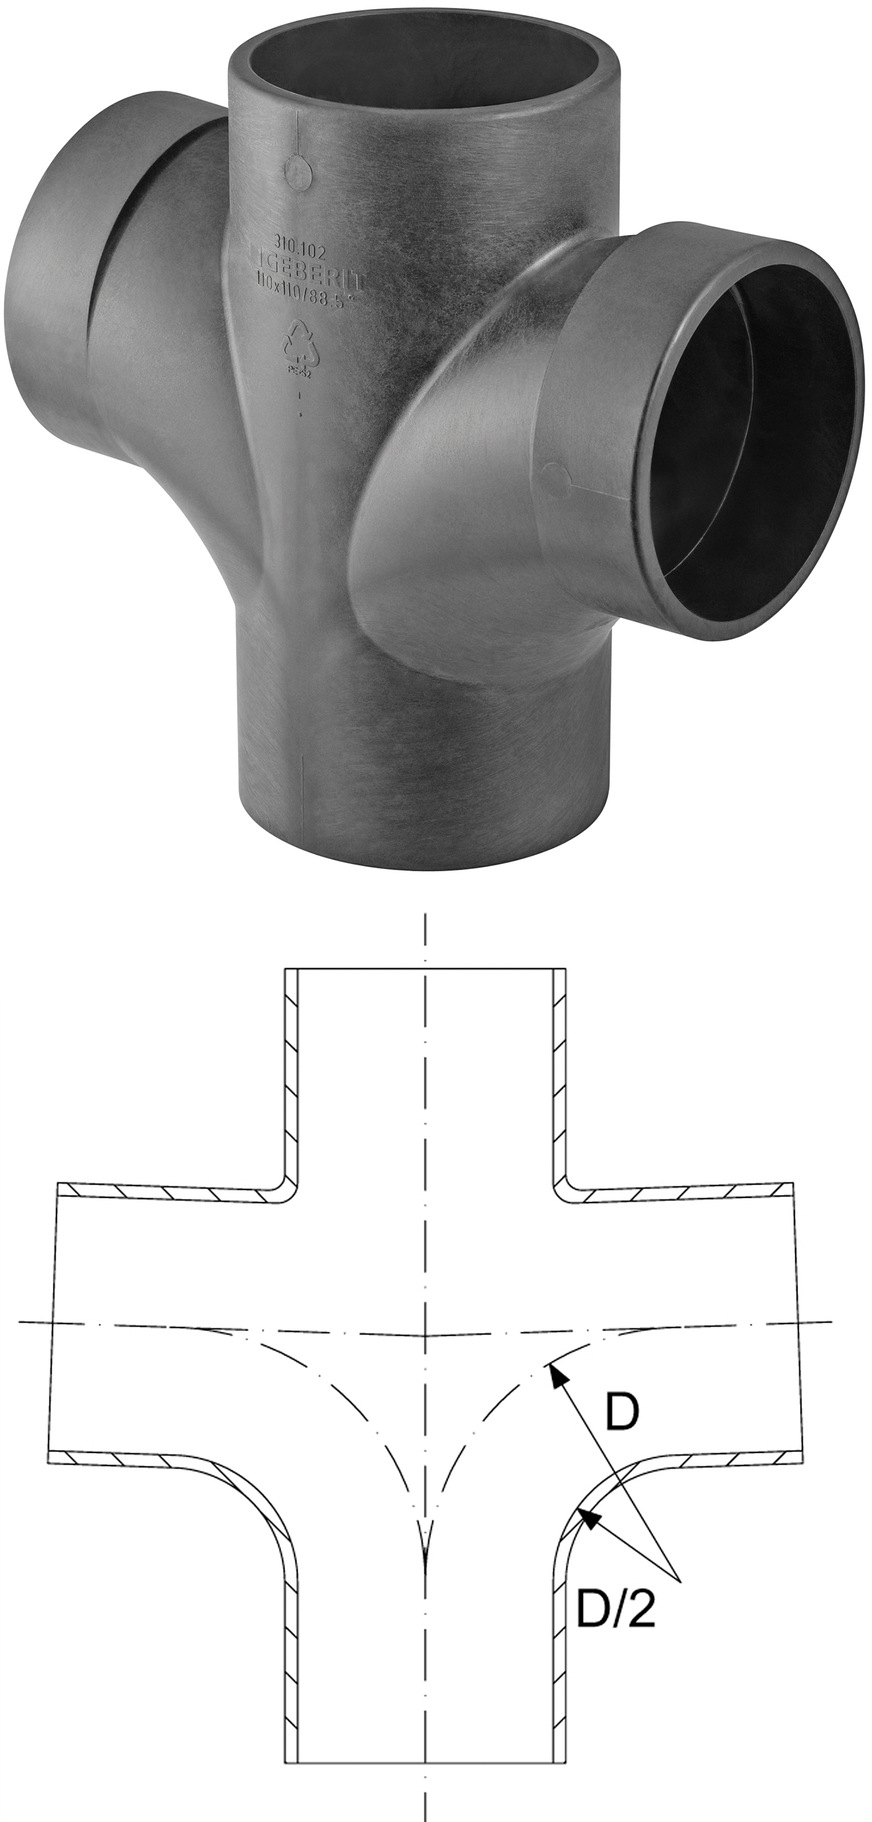 Bild 3  Doppelabzweig: Der Bogenradius (Größe des halben Durchmessers) spielt die entscheidende Rolle, denn nur so lassen sich Anwendungsgrenzen erweitern.